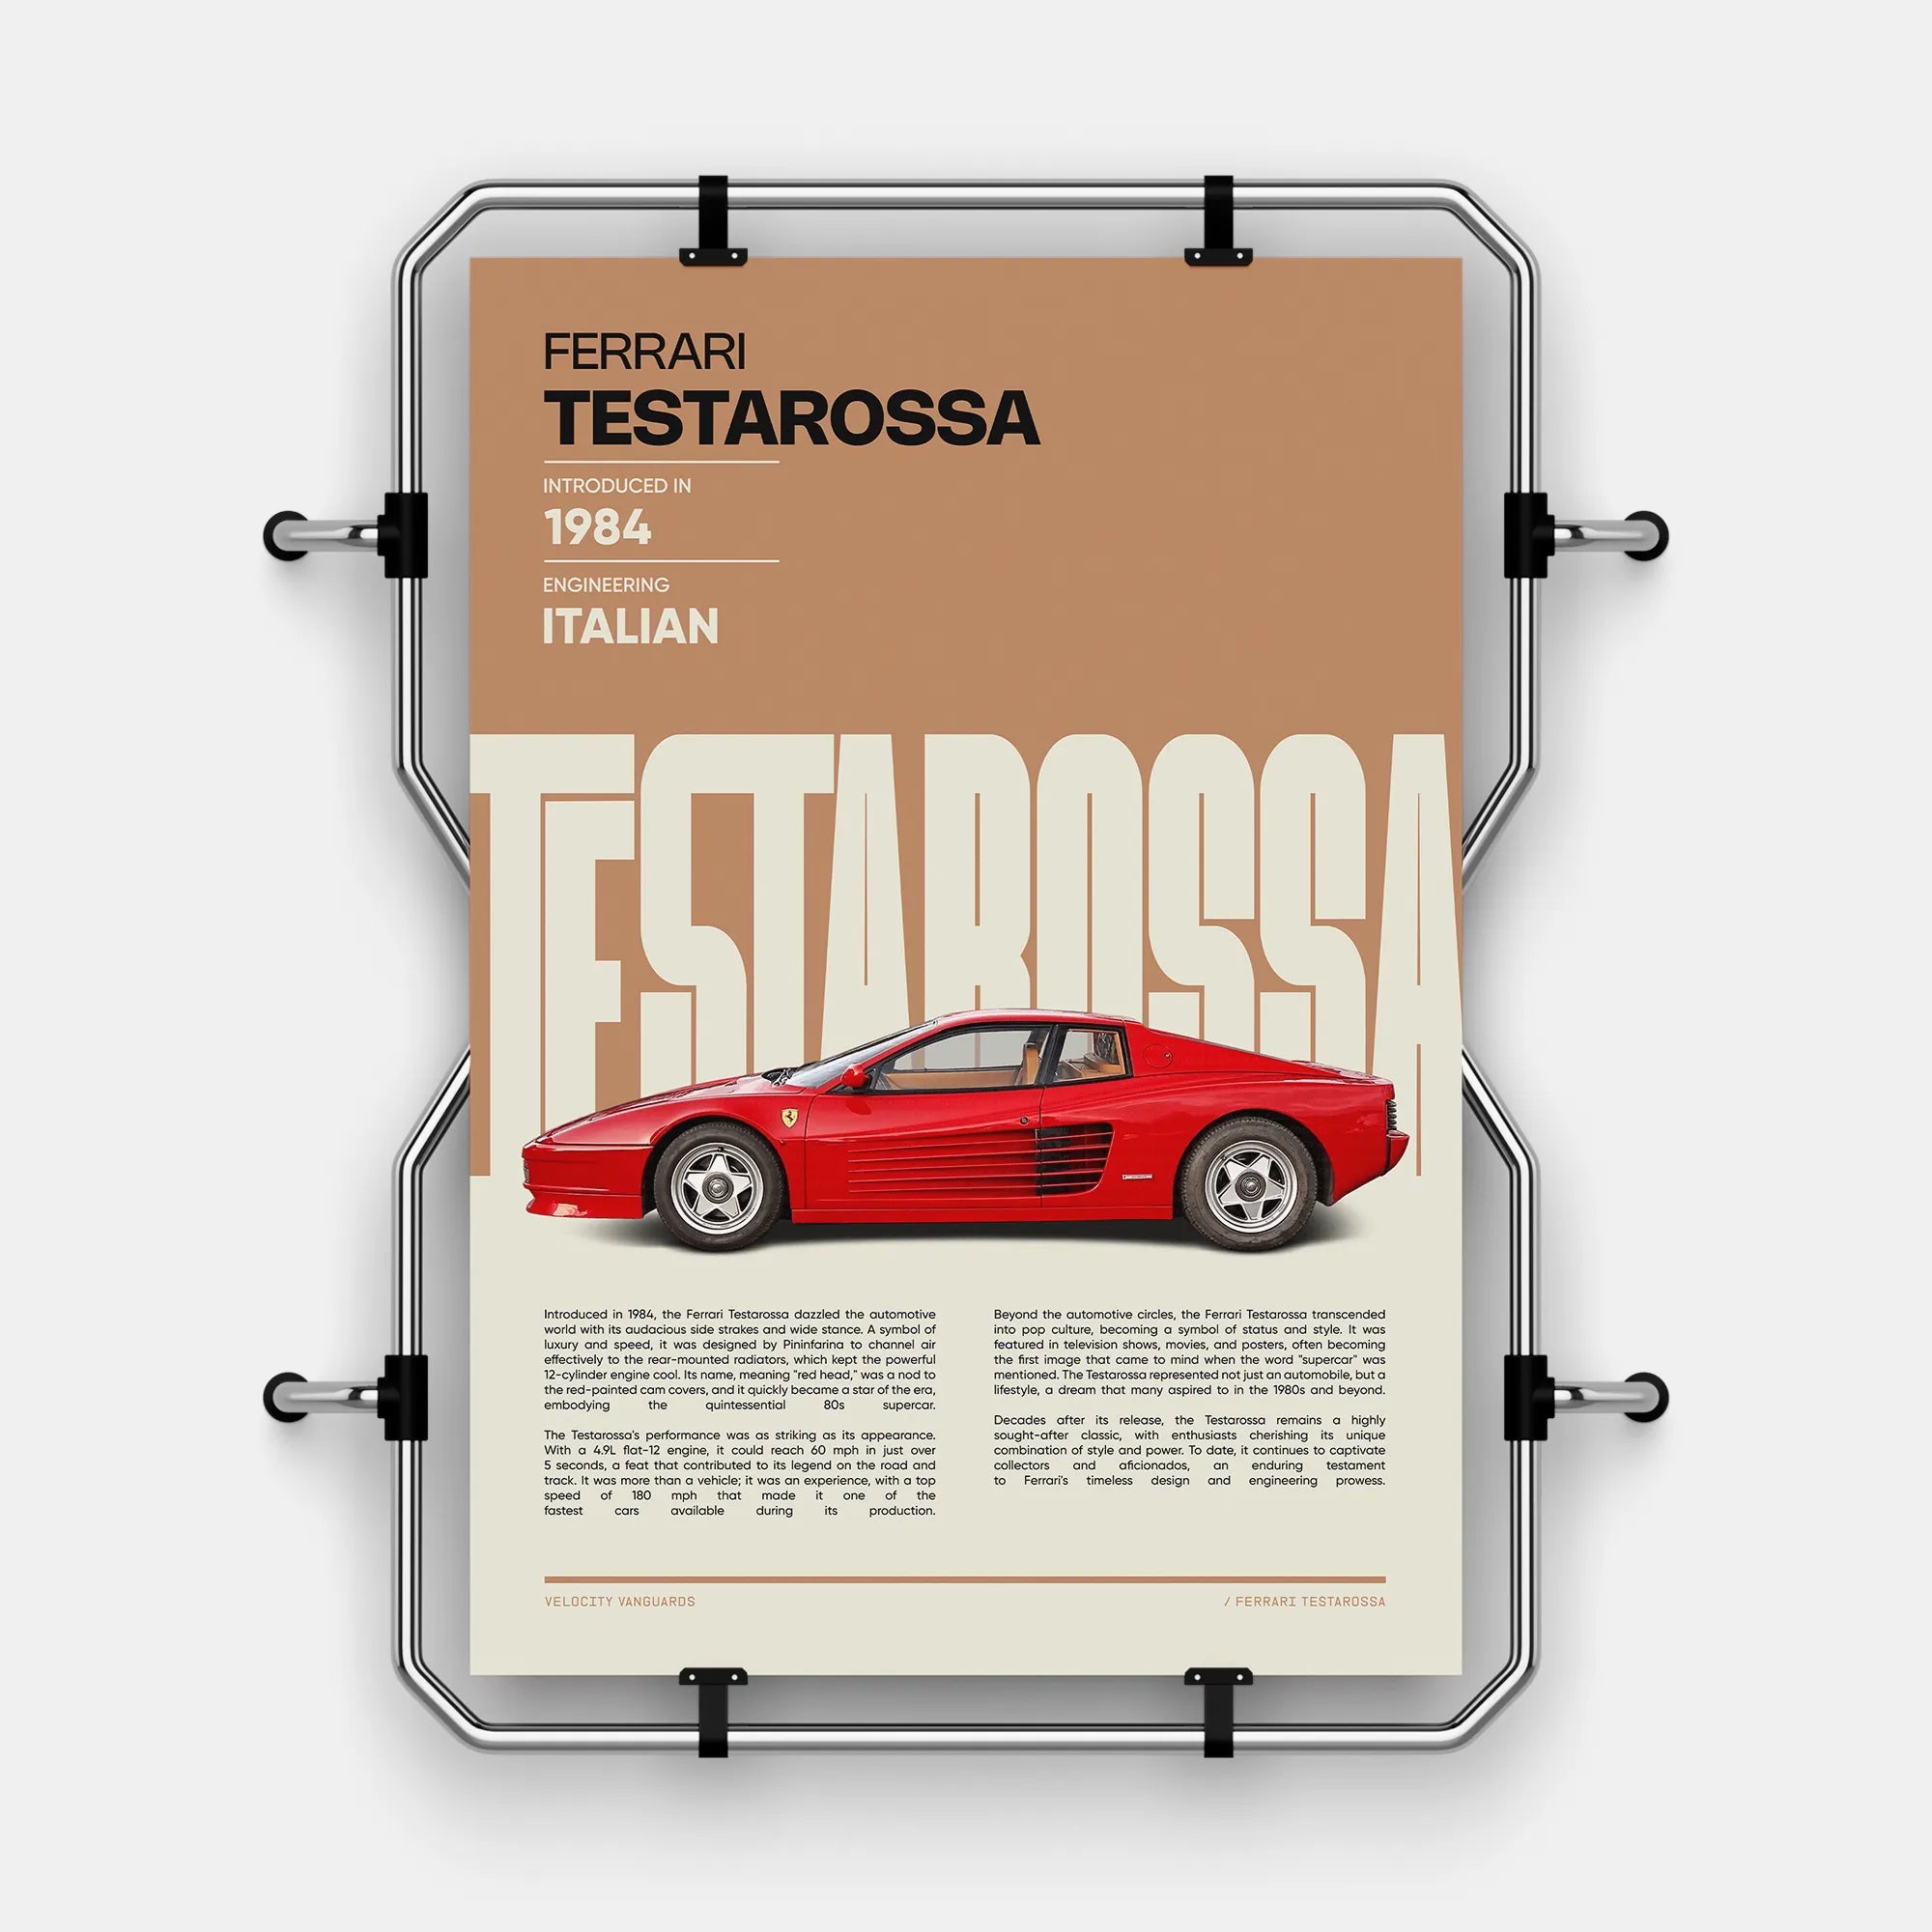 The Ferrari Testarossa